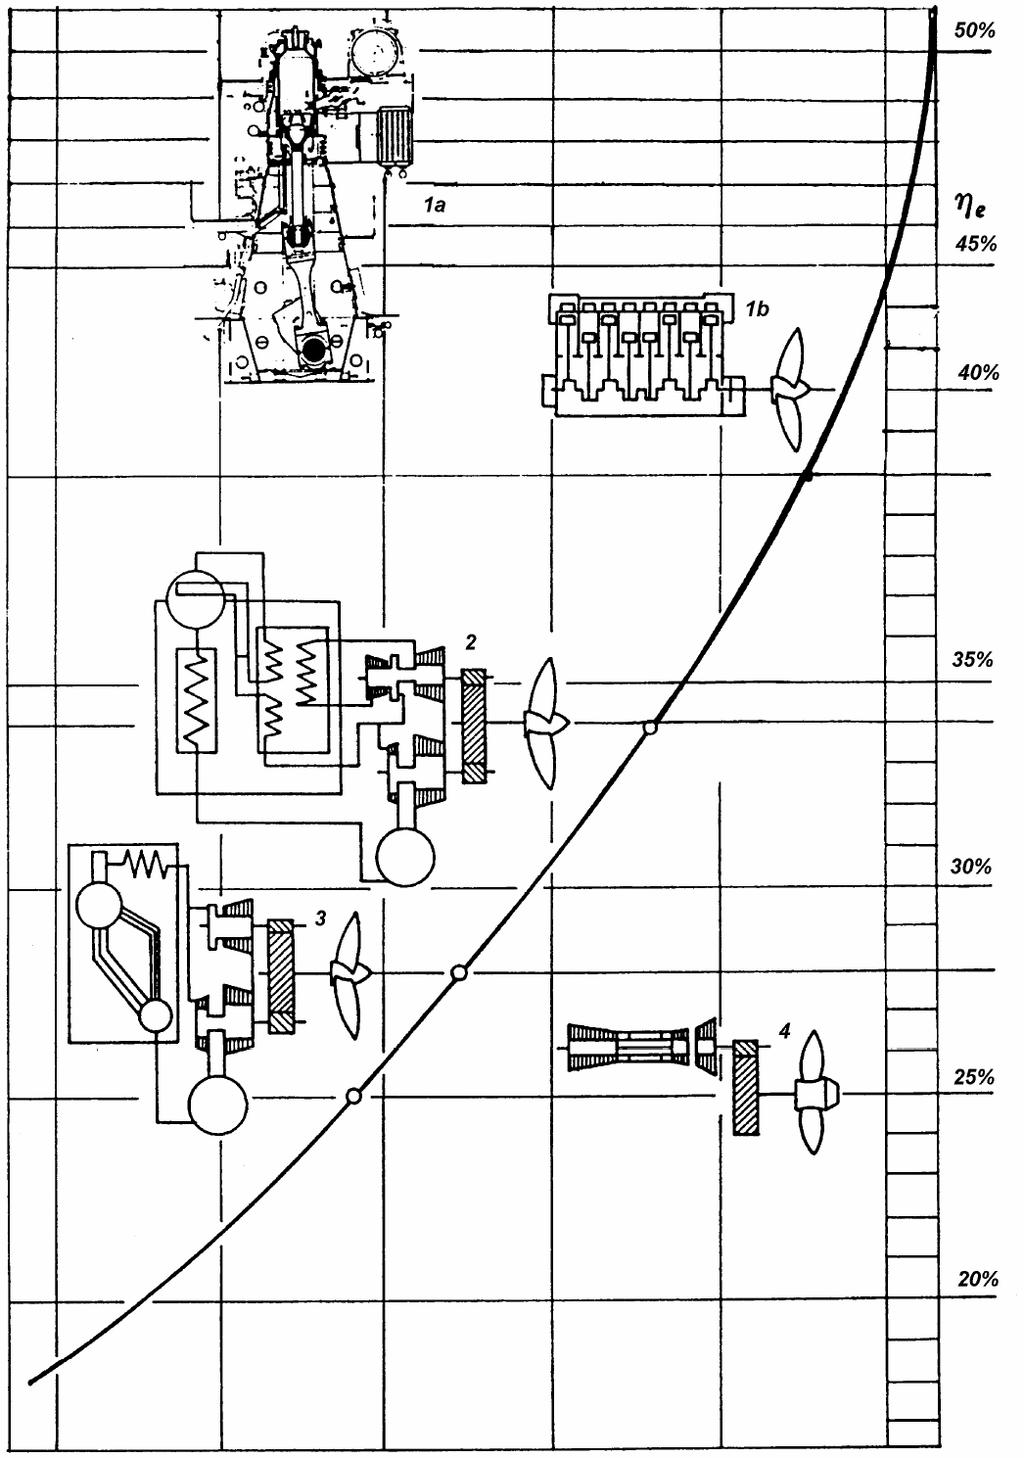 Iskoristivost brodskih propulzijskih postrojenja 1a - nove generacije dizel-motora: Sulzer